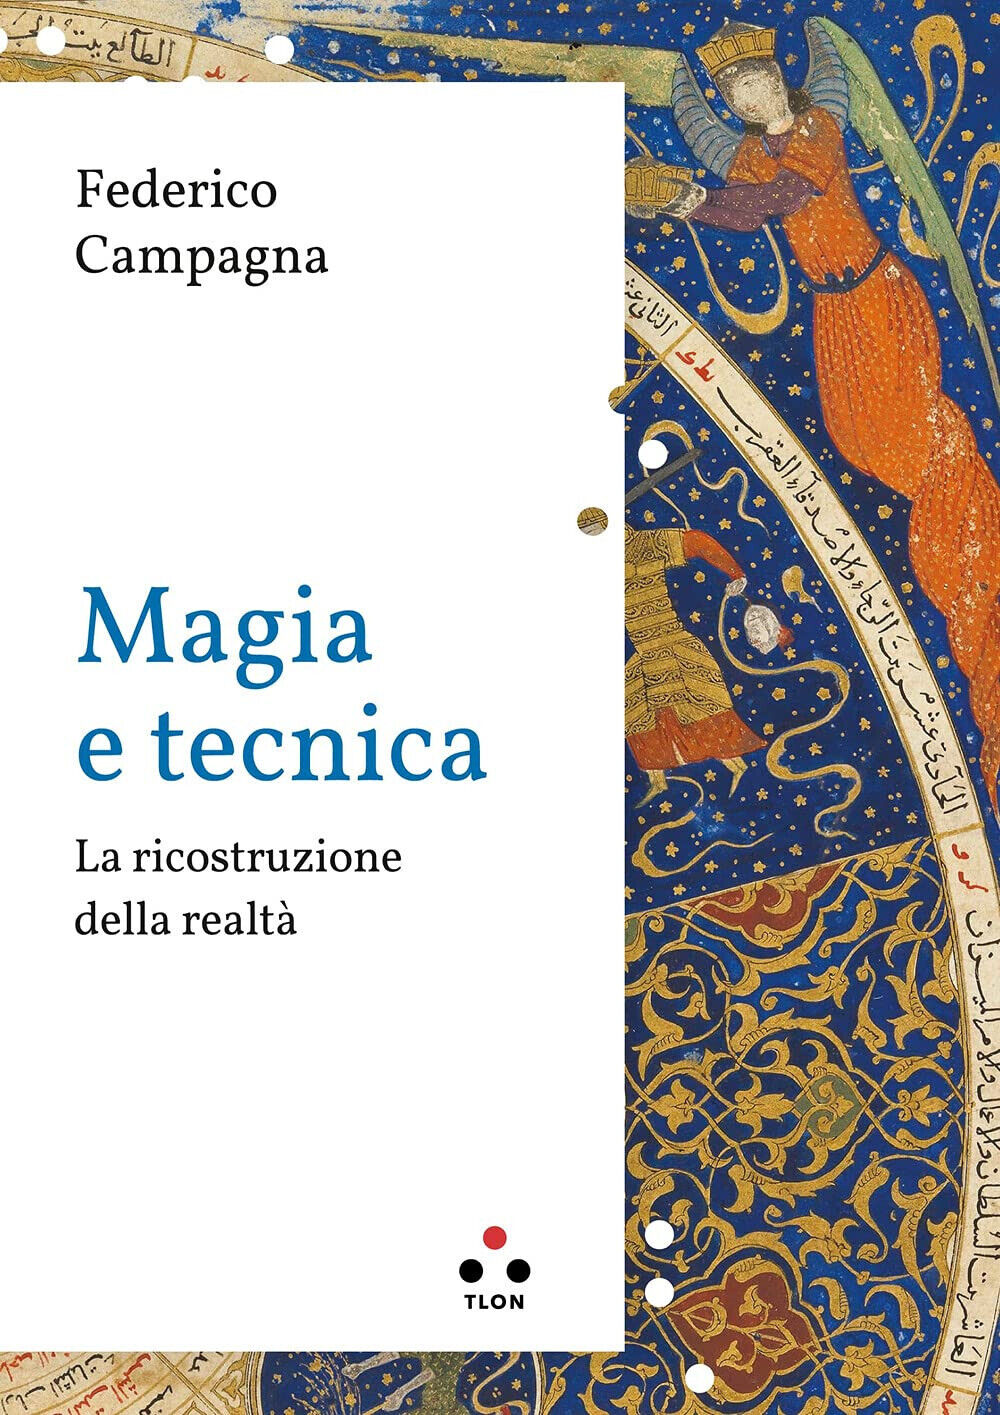 Magia e tecnica - Federico Campagna - Tlon, 2021